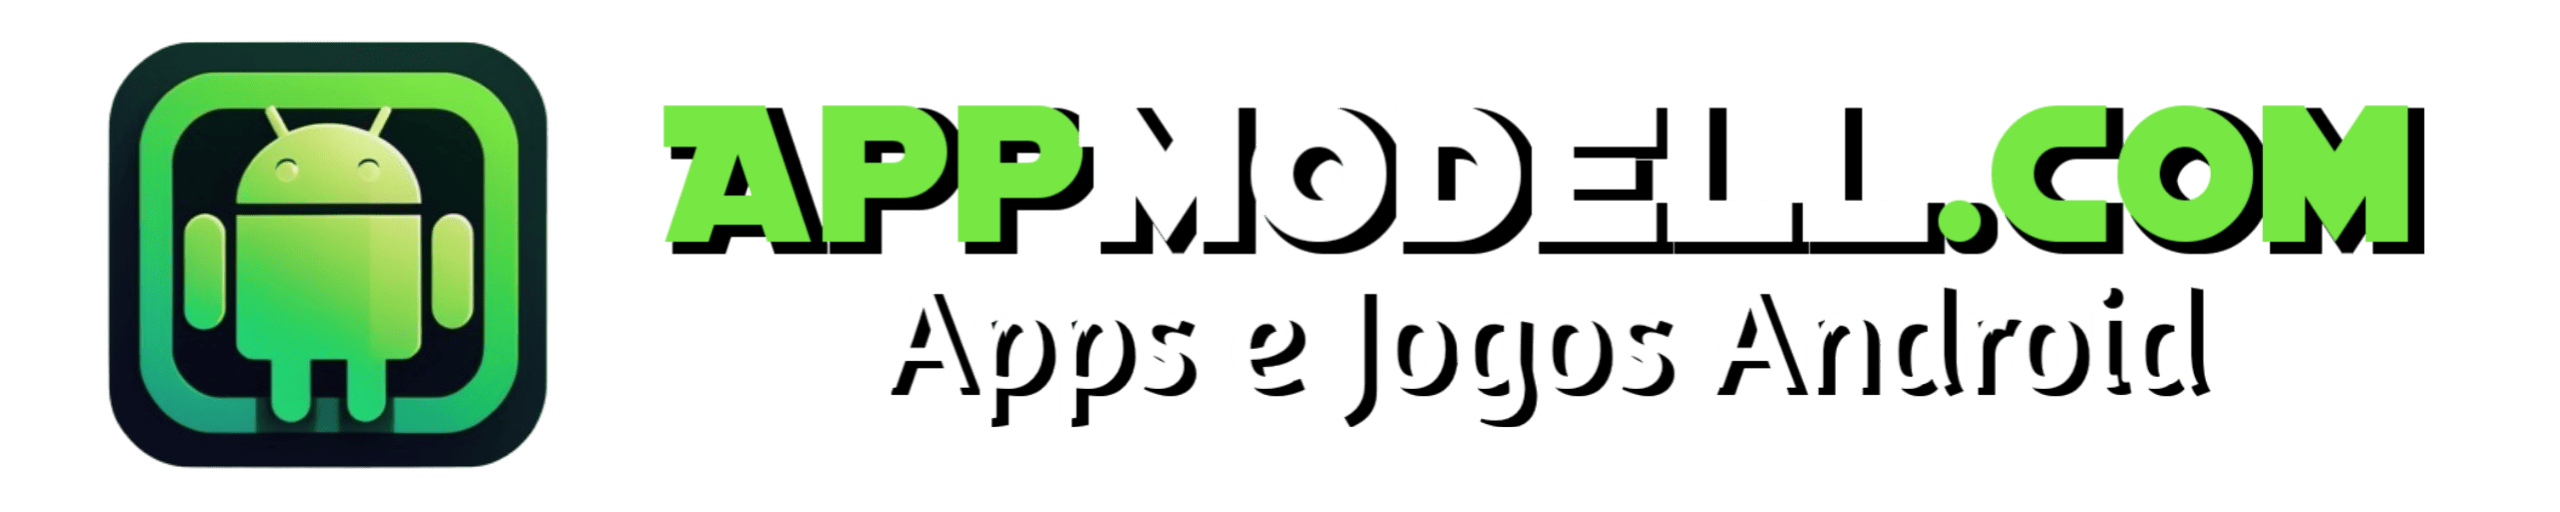 AppModell